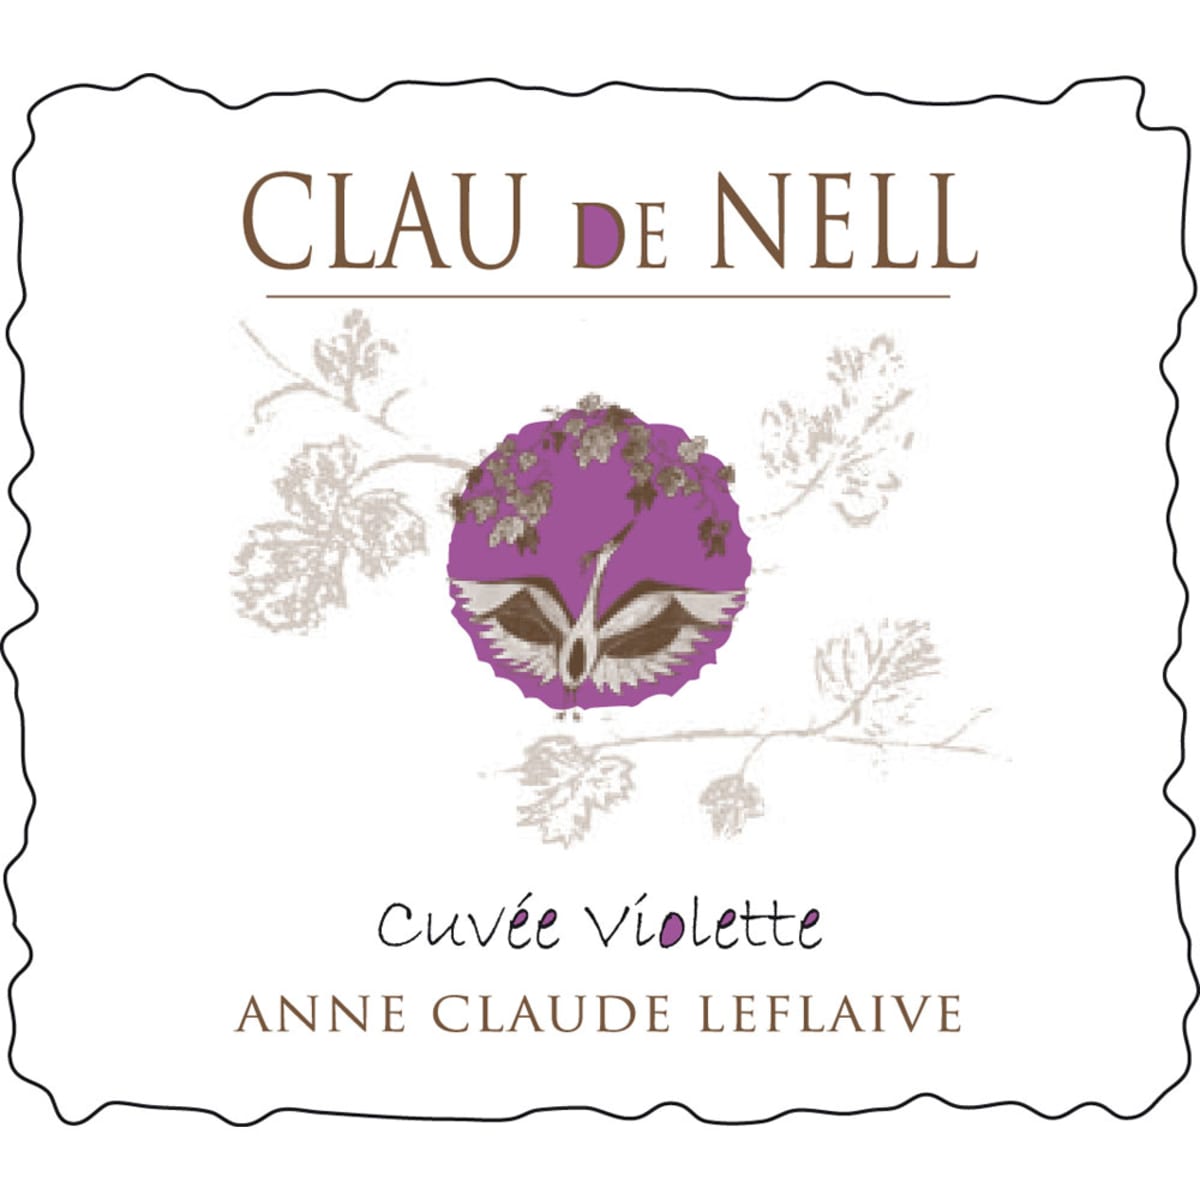 Clau de Nell Cuvee Violette 2012 Front Label